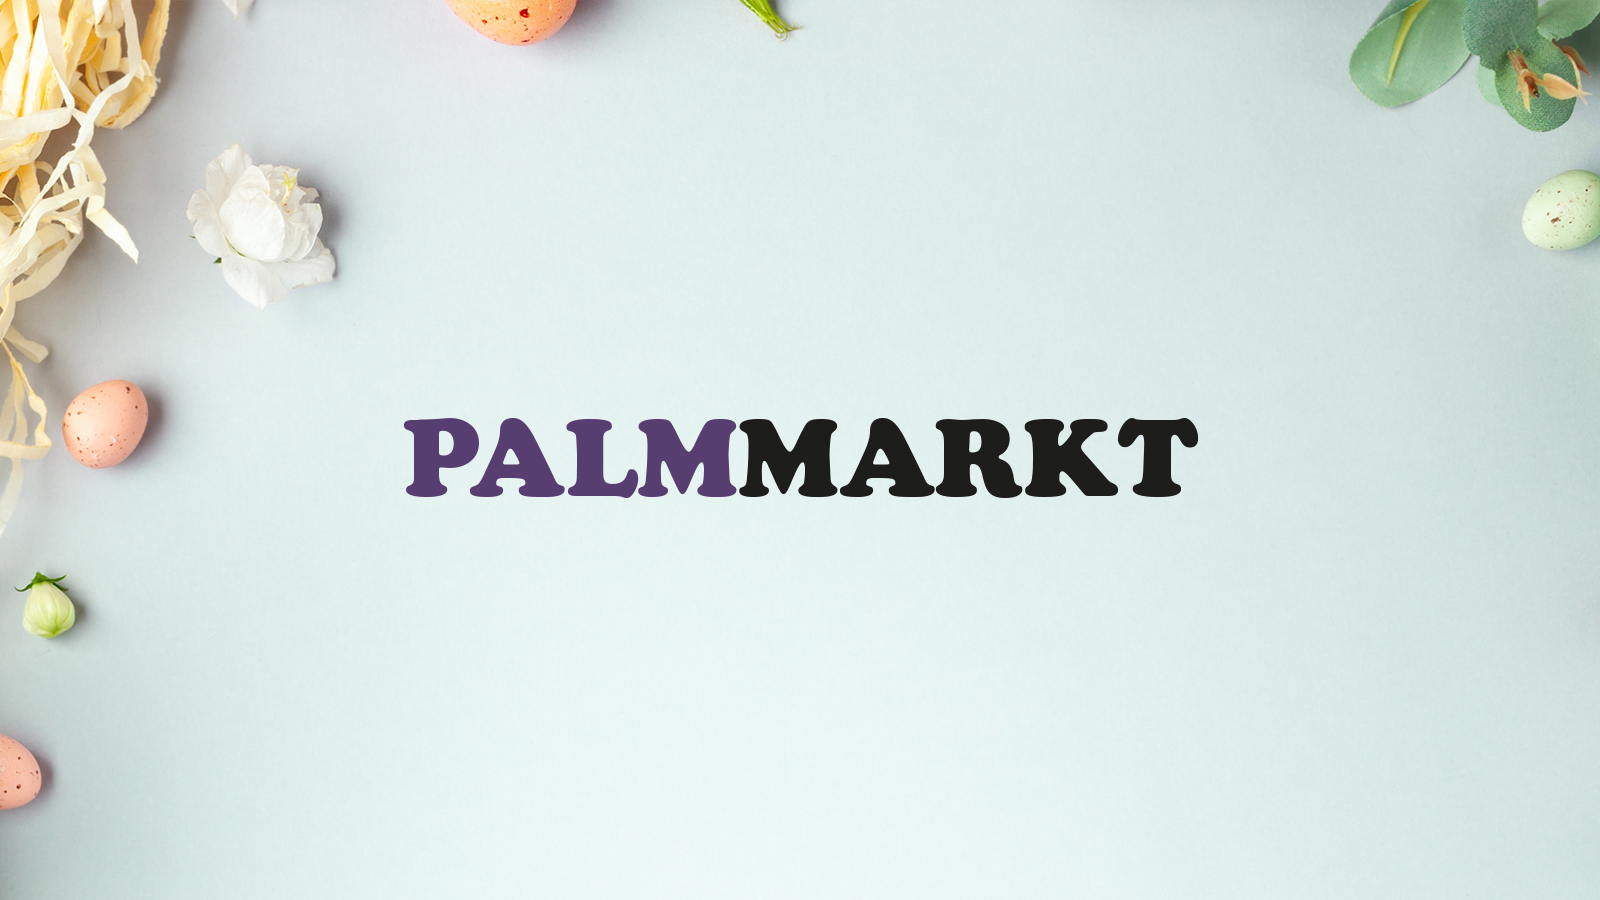 Palmmarkt